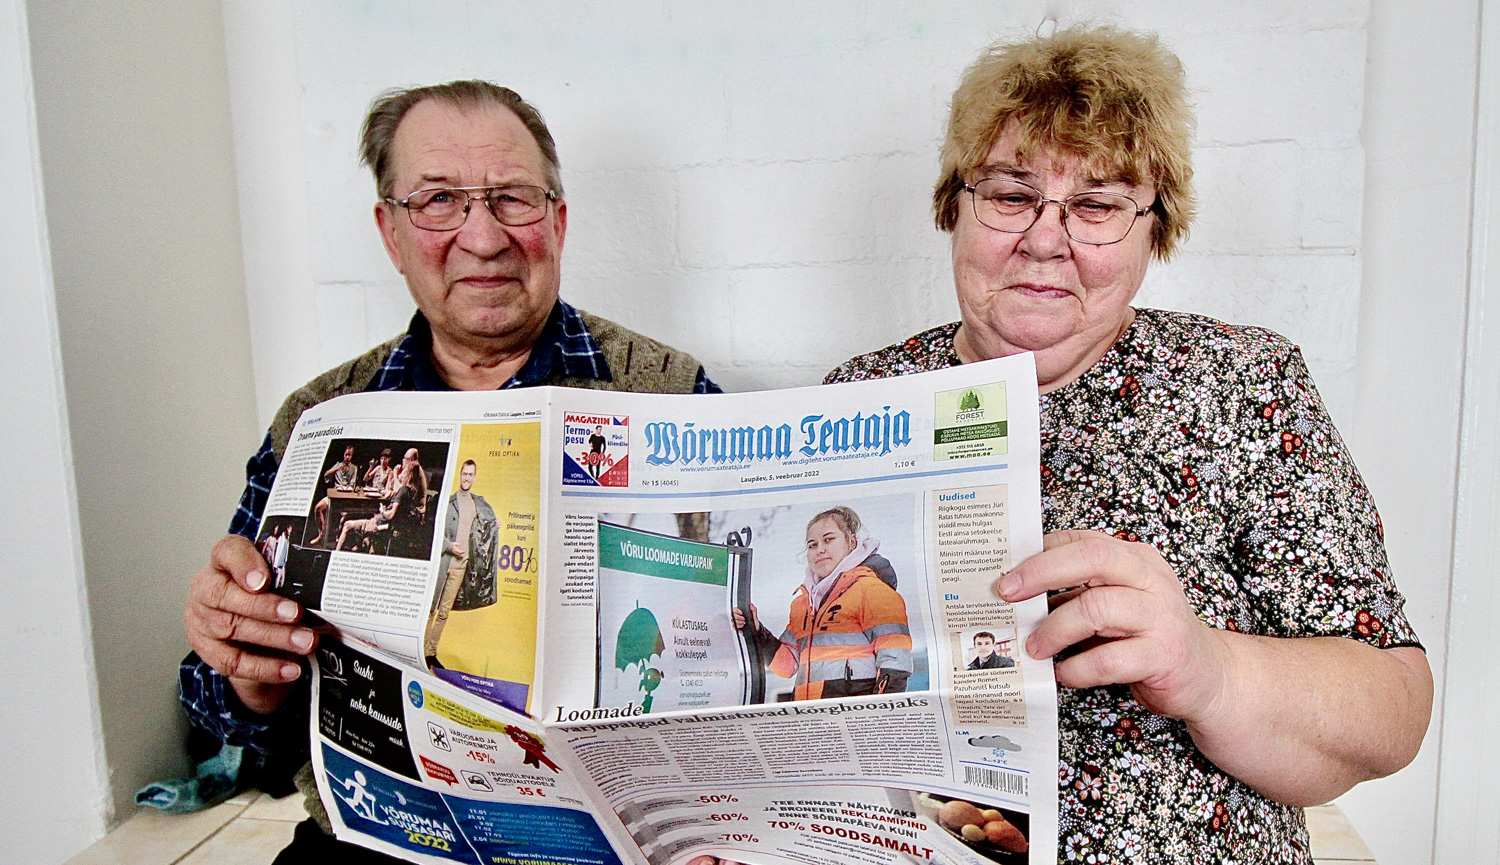 Leo (73) ja Marju (69) Voolaid oma  kaunis kodus lesol lehte lugemas.  Foto: KALEV ANNOM